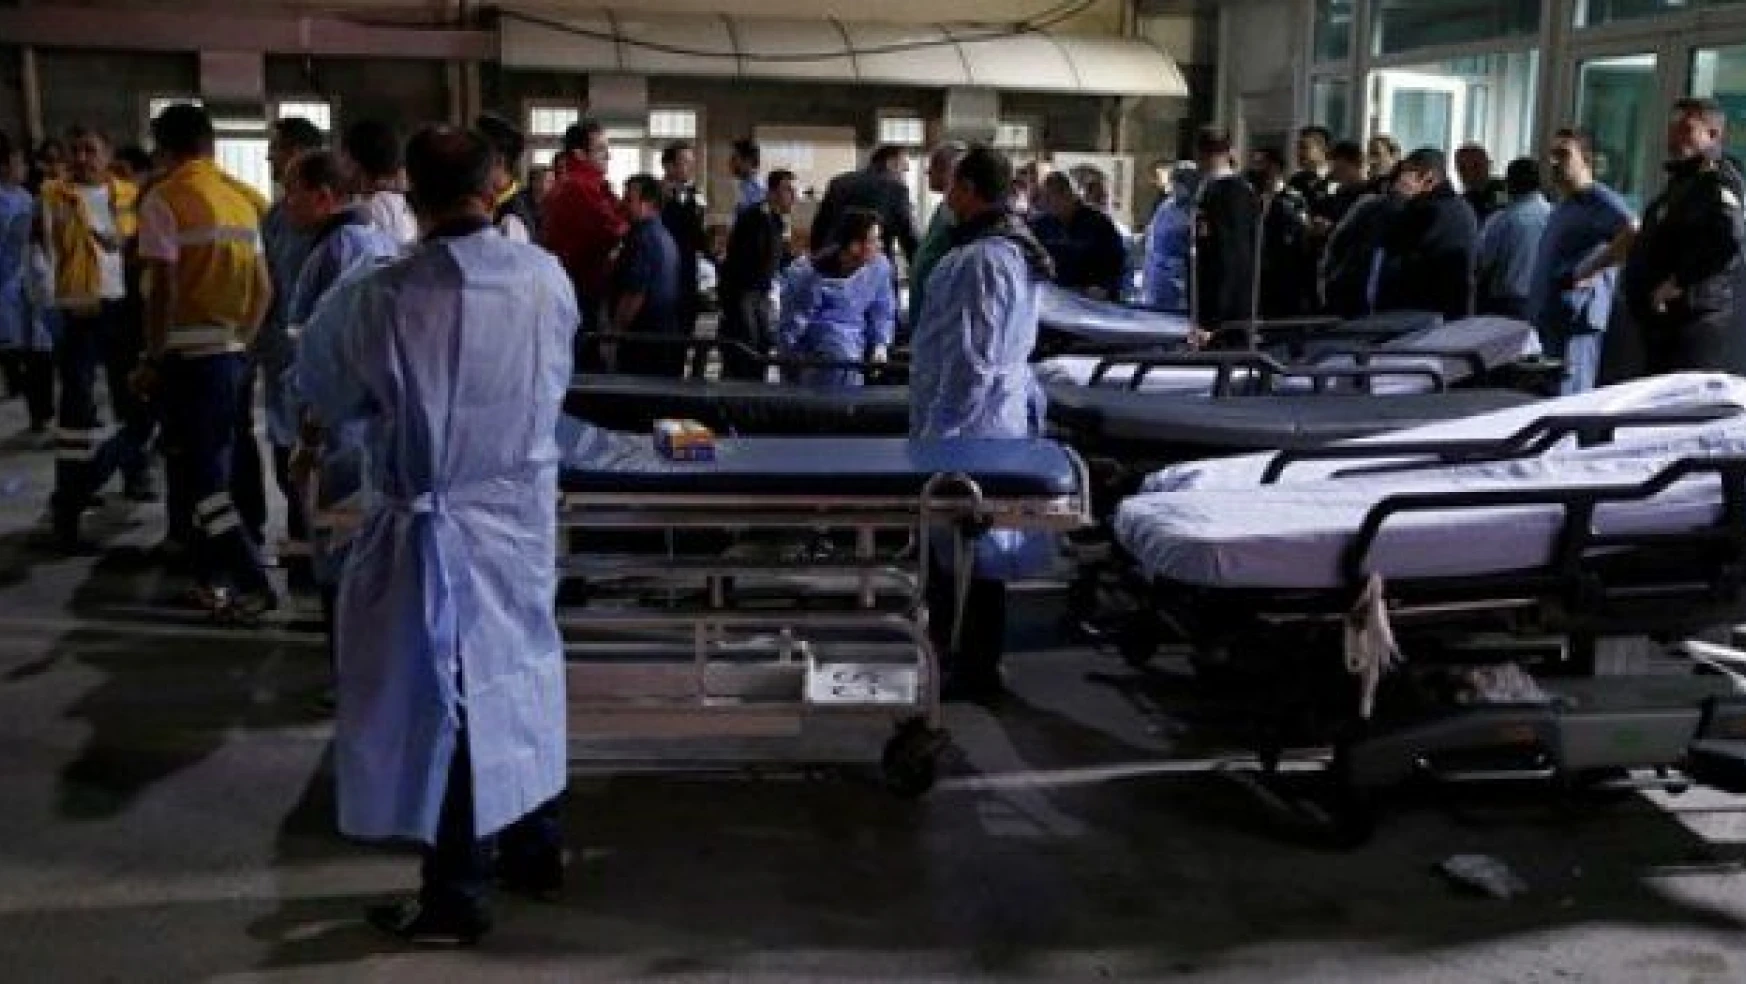 Patlamada yaralanan 82 kişi taburcu edildi, 43 kişi hastanede